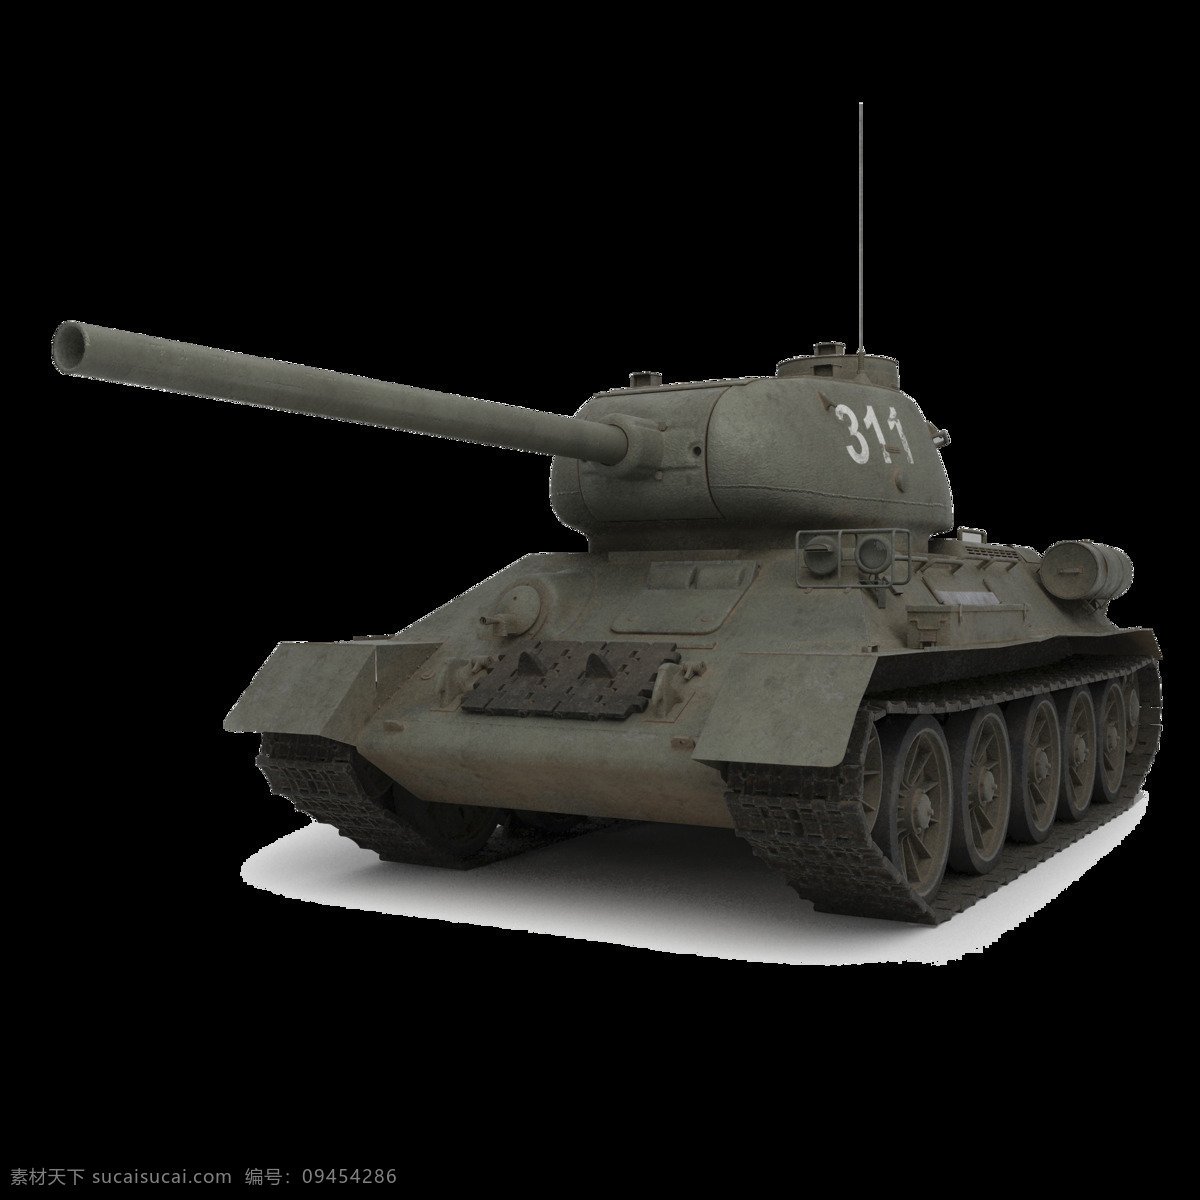 带 炮 大 坦克 免 抠 透明 步兵战车 装甲车 坦克装甲 坦克素材 坦克图片 坦克武器 履带式坦克 轮式坦克 中国坦克 俄罗斯坦克 美国坦克 兵器素材